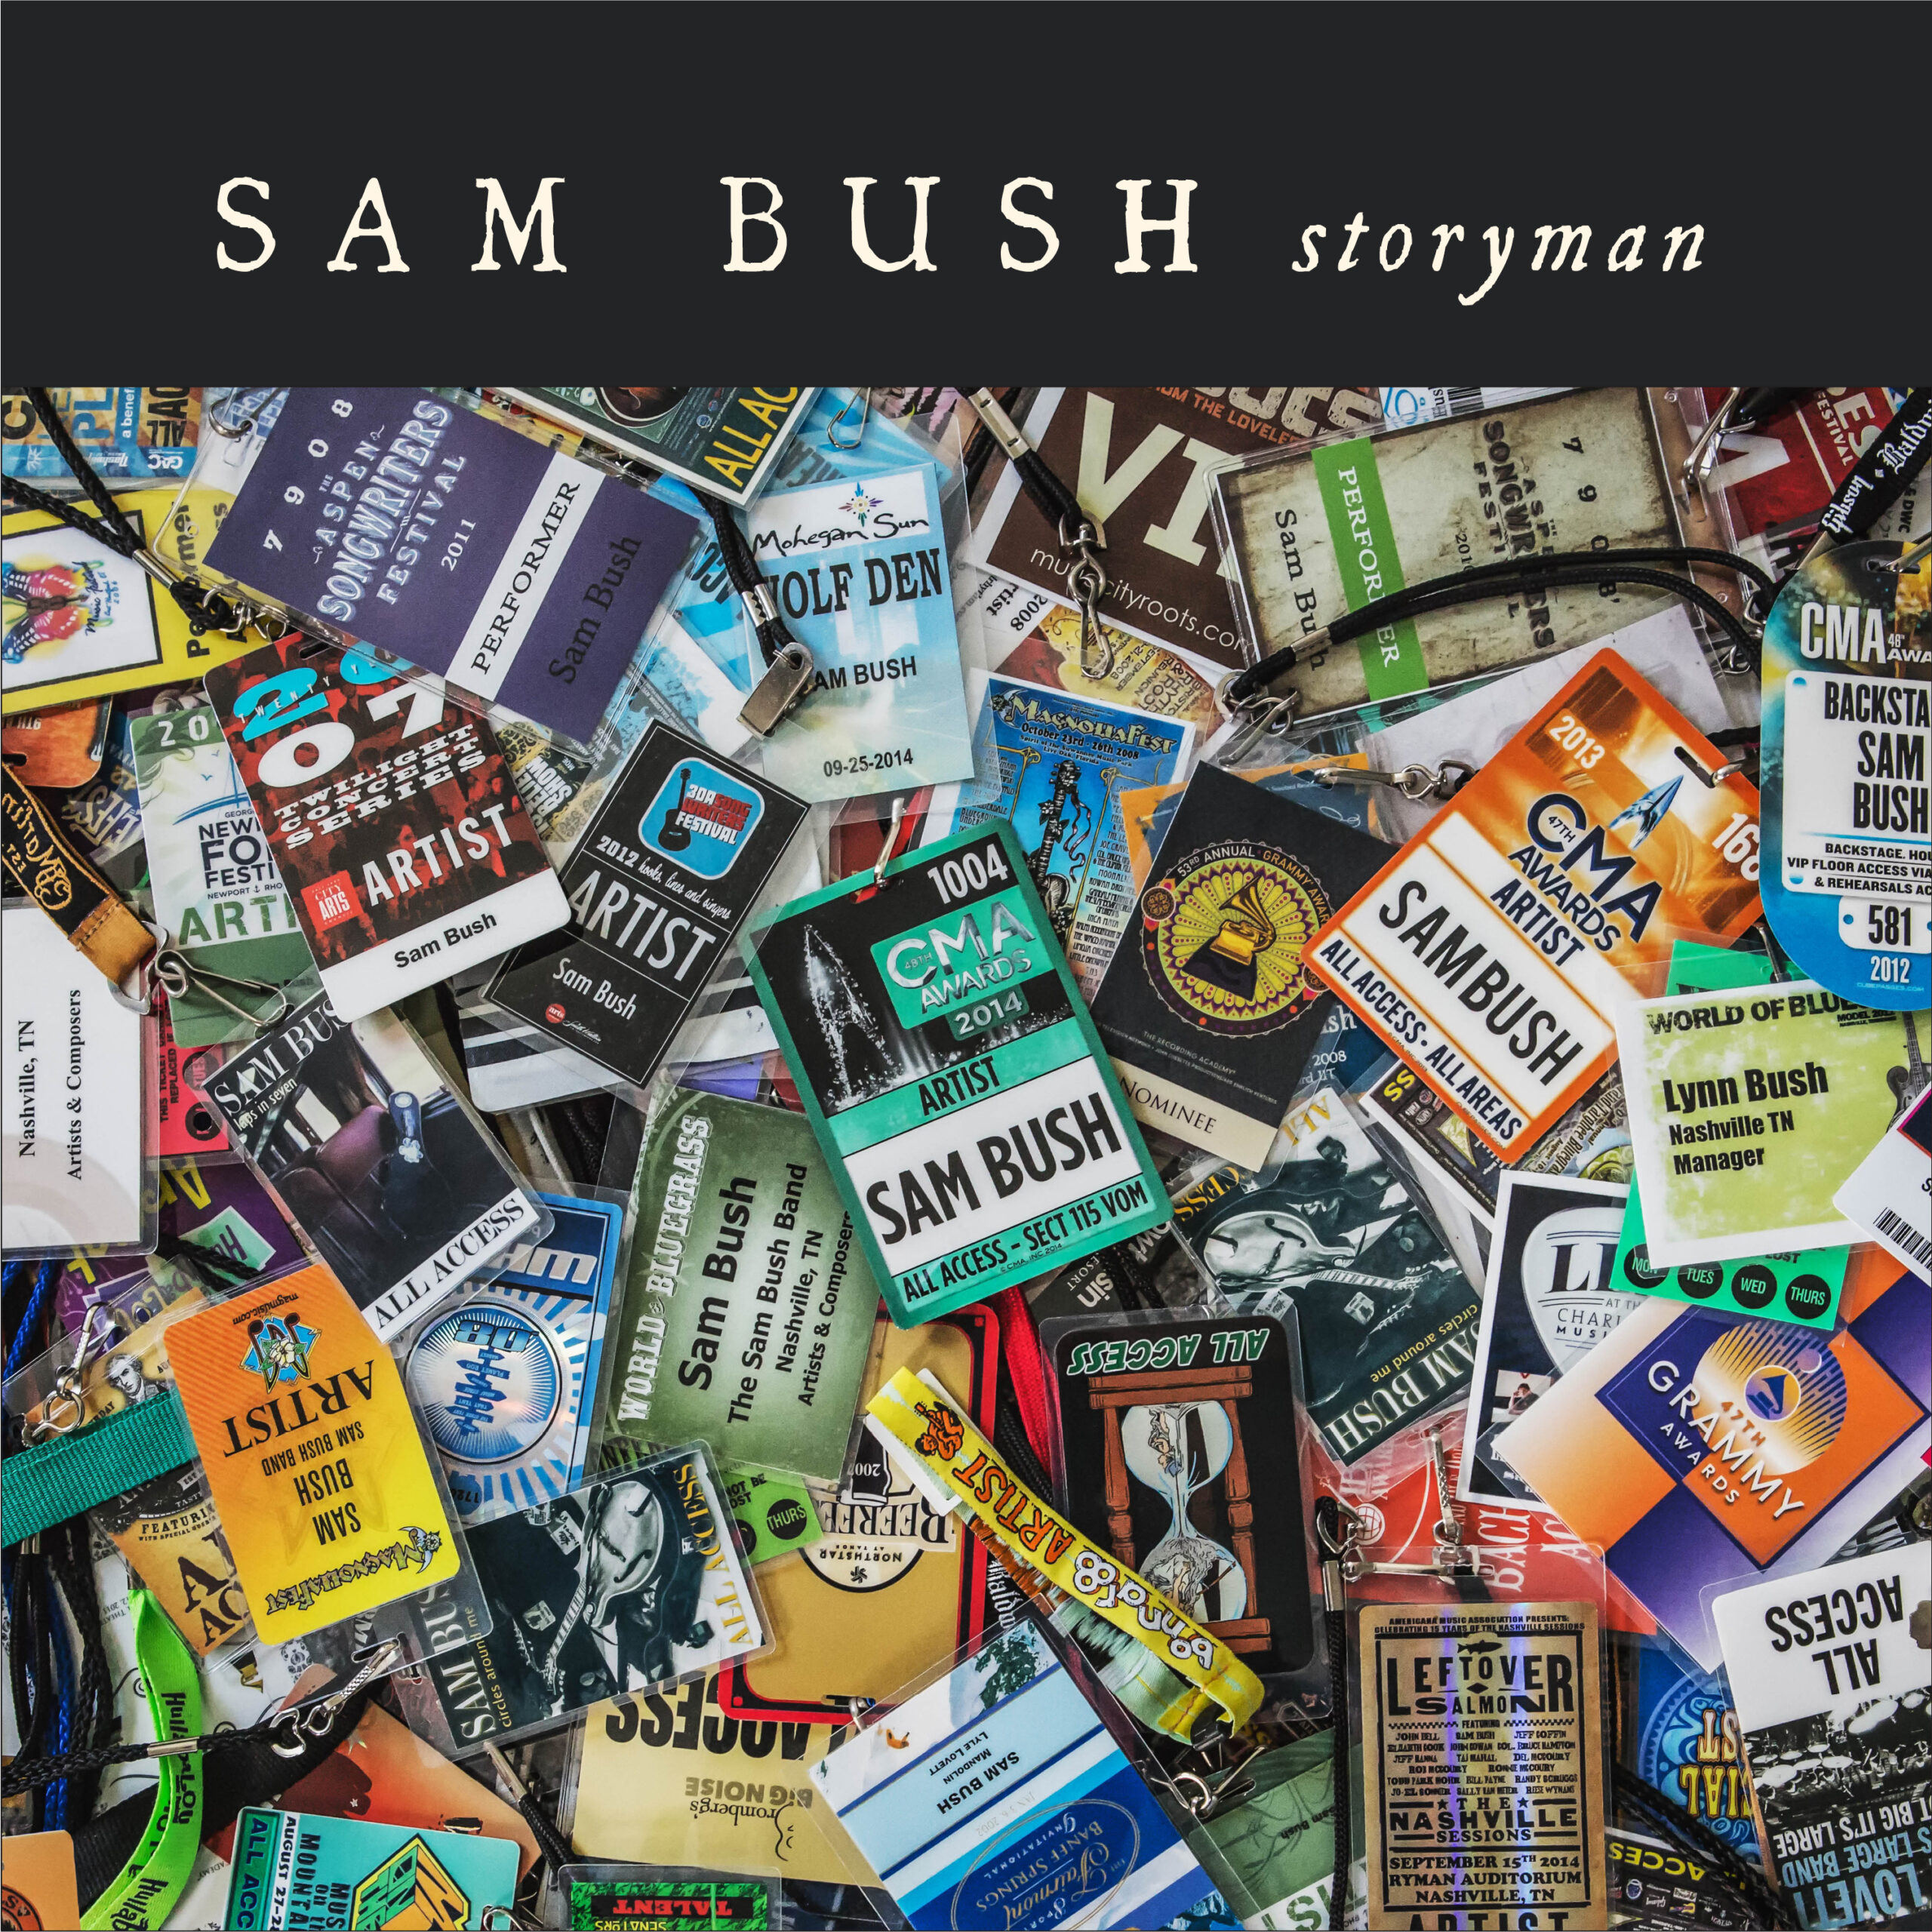 Sam Bush Storyman album artwork. Photo provided.